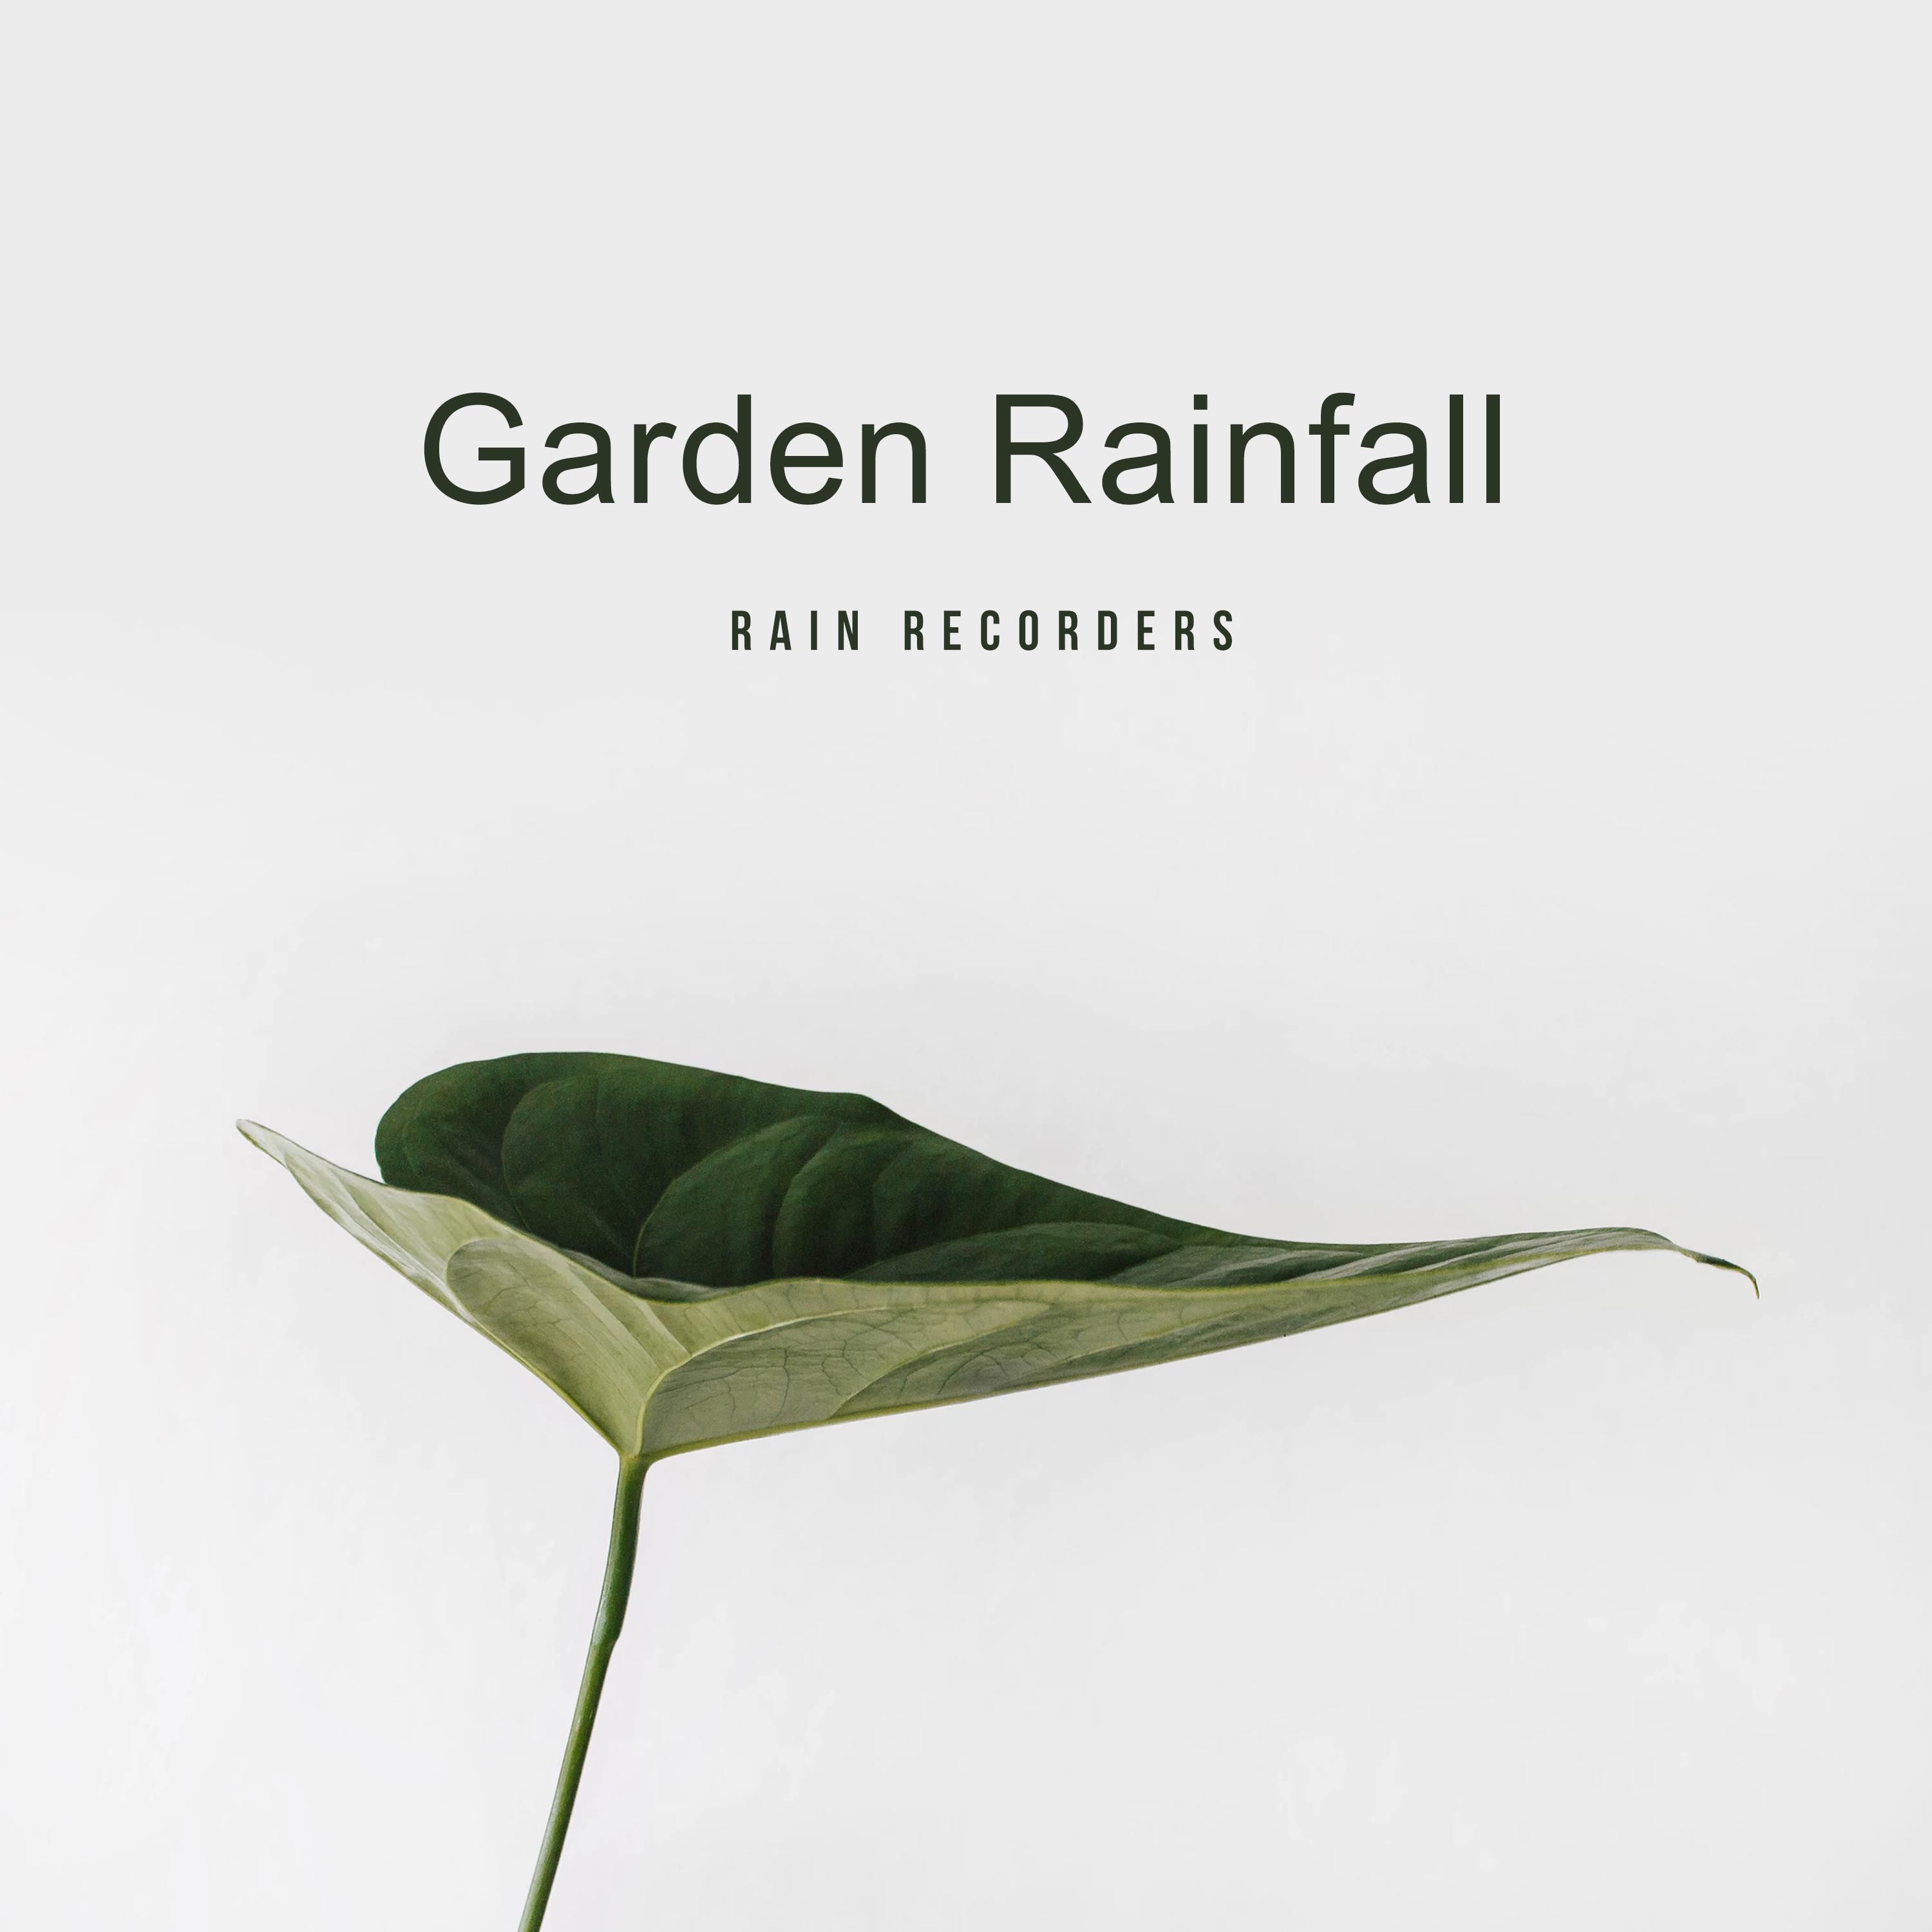 Garden Rainfall